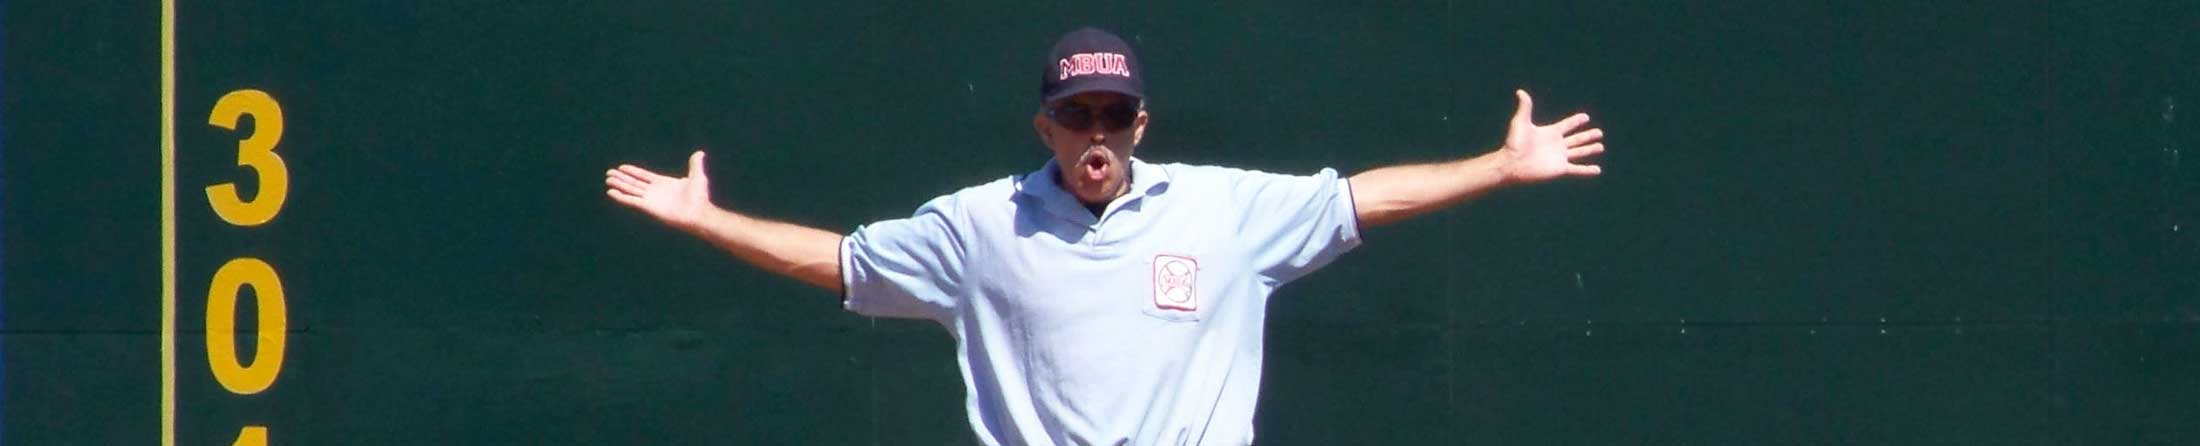 Alberto Collado, Baseball Umpire - header